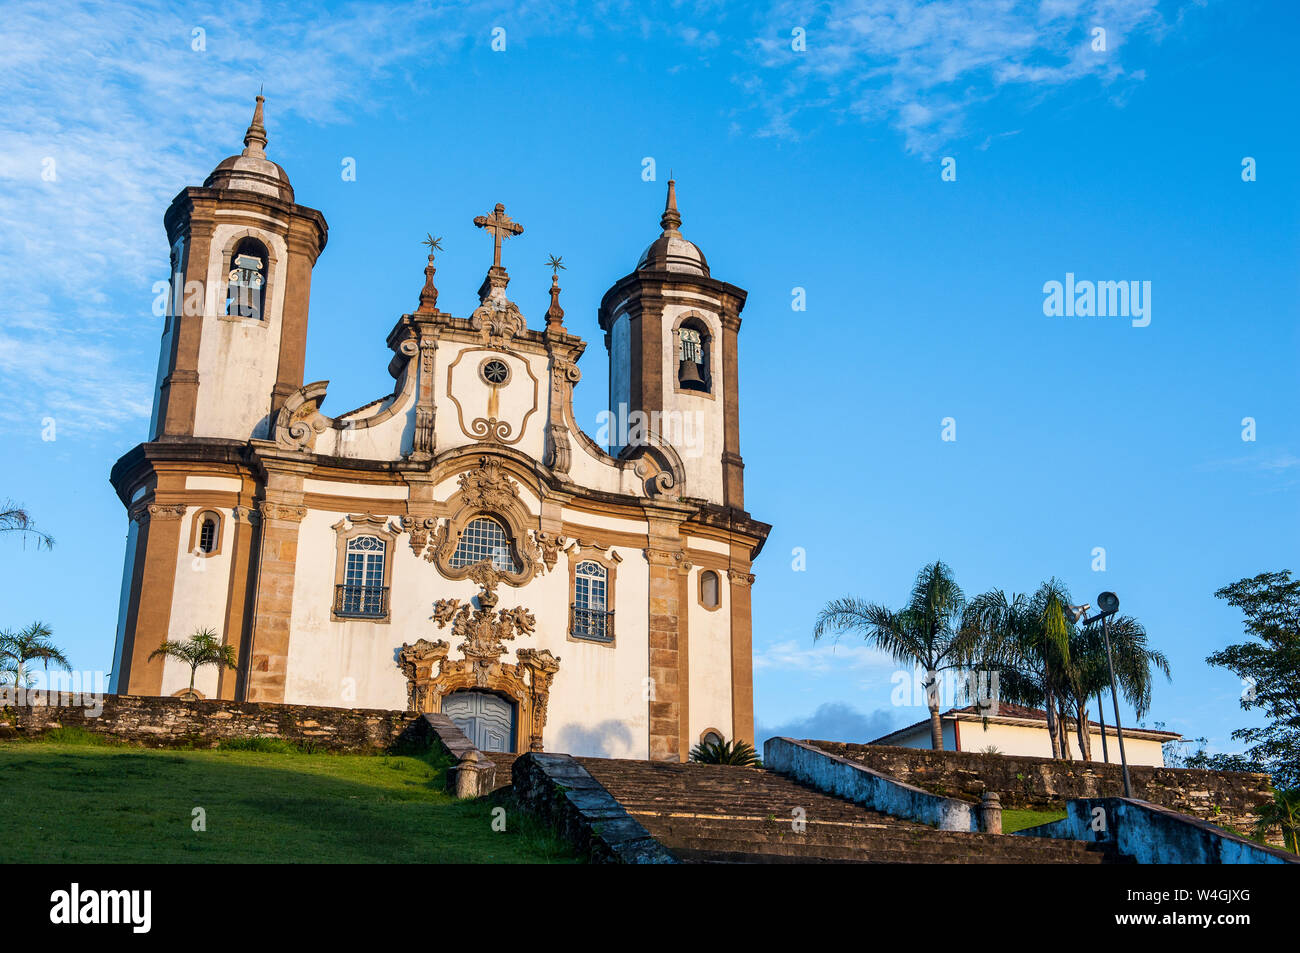 Nossa Senhora do Carmo church in Outo Preto, Minas Gerais, Brésil Banque D'Images